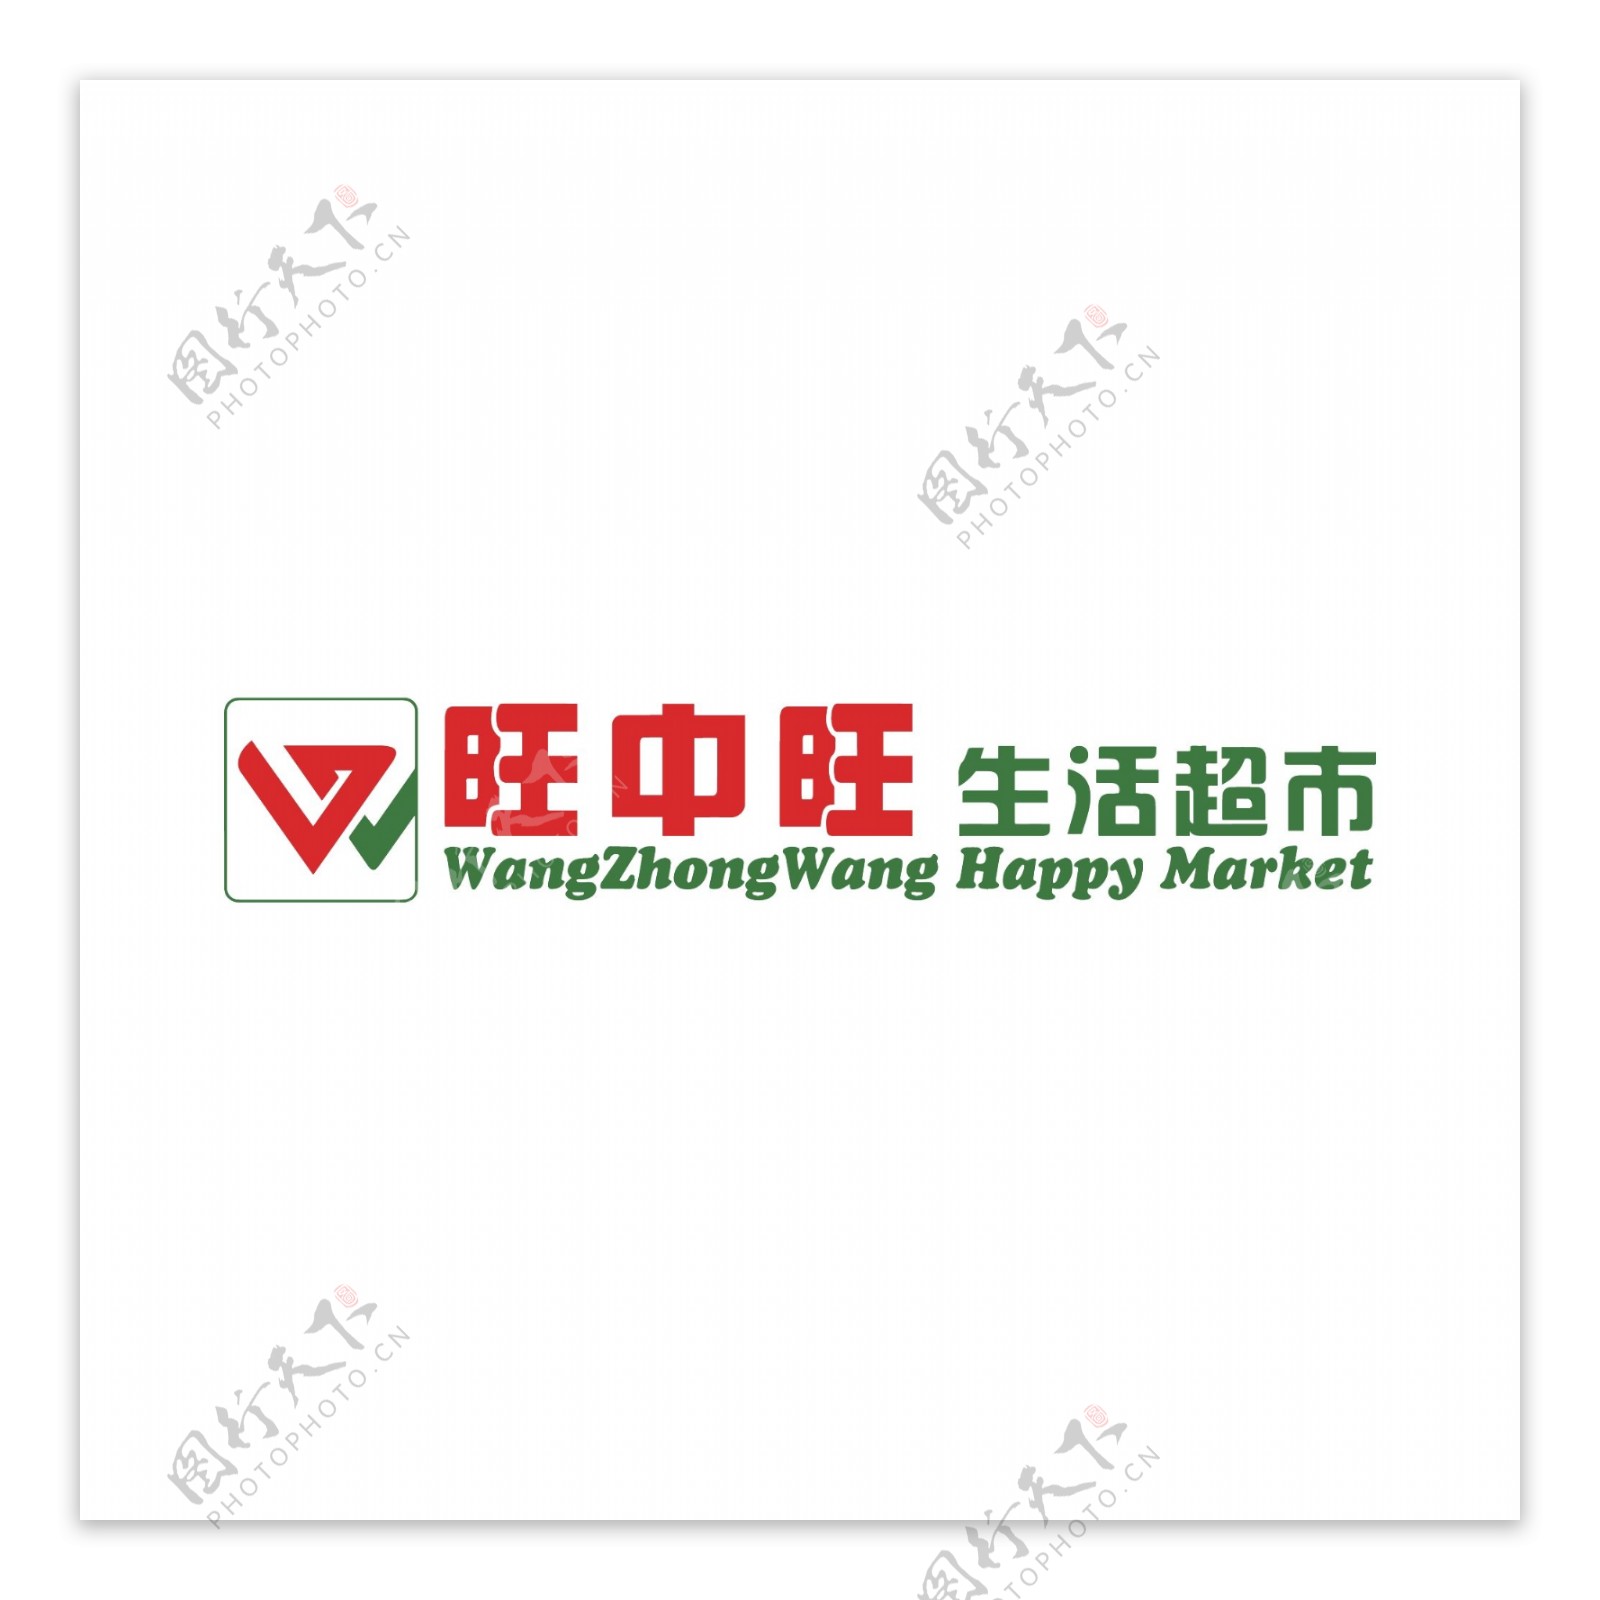 旺中旺logo超市卖场便利店